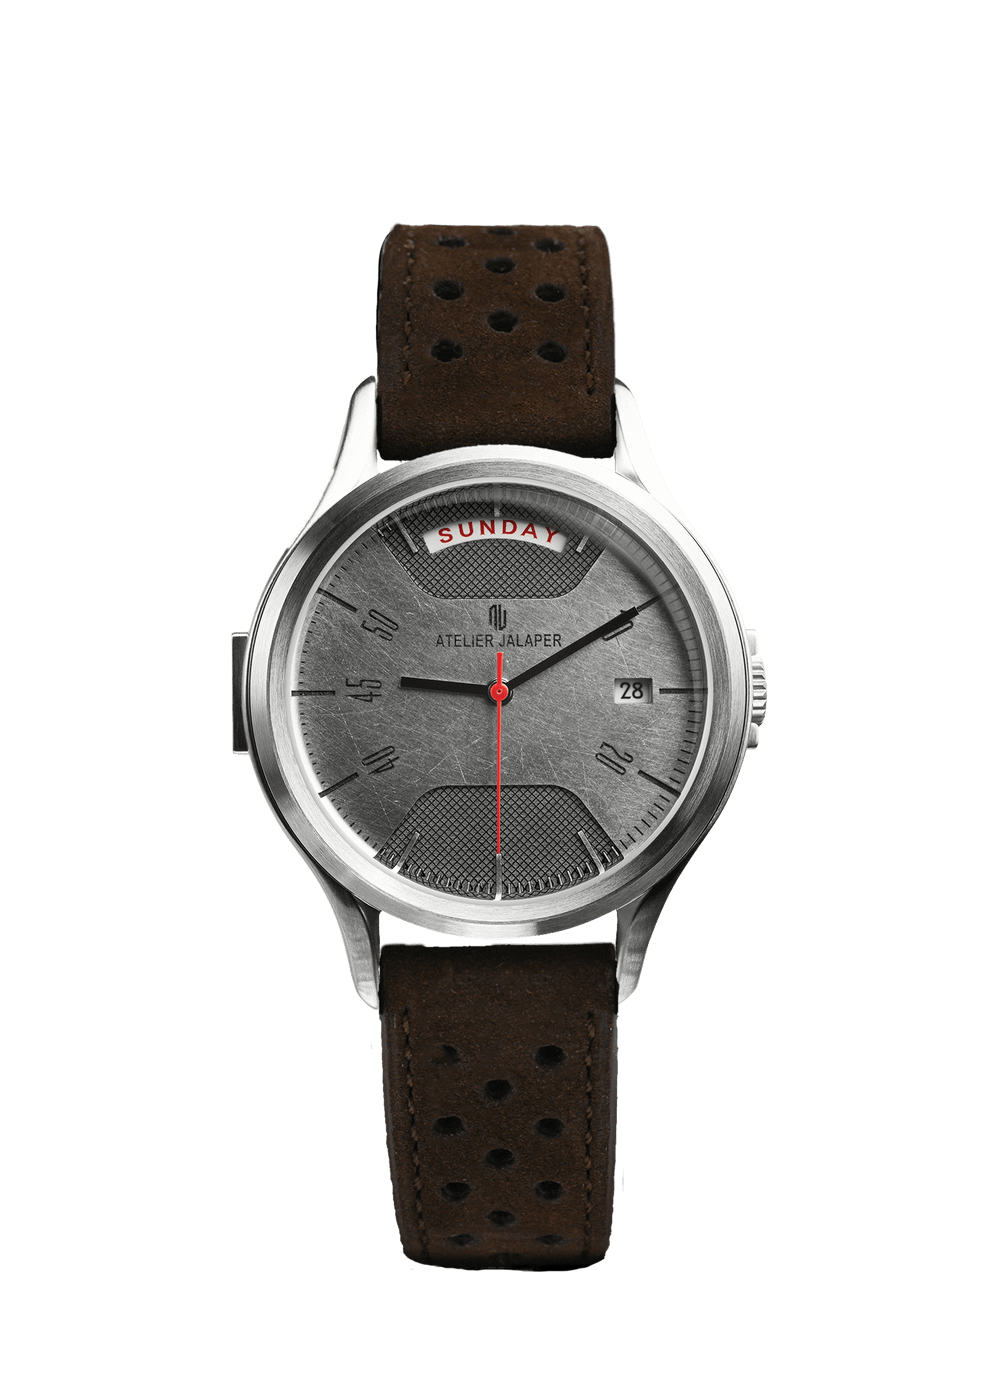 Bracelet de montre en cuir marron véritable avec perforations multiples porté sur une montre AJ002-S